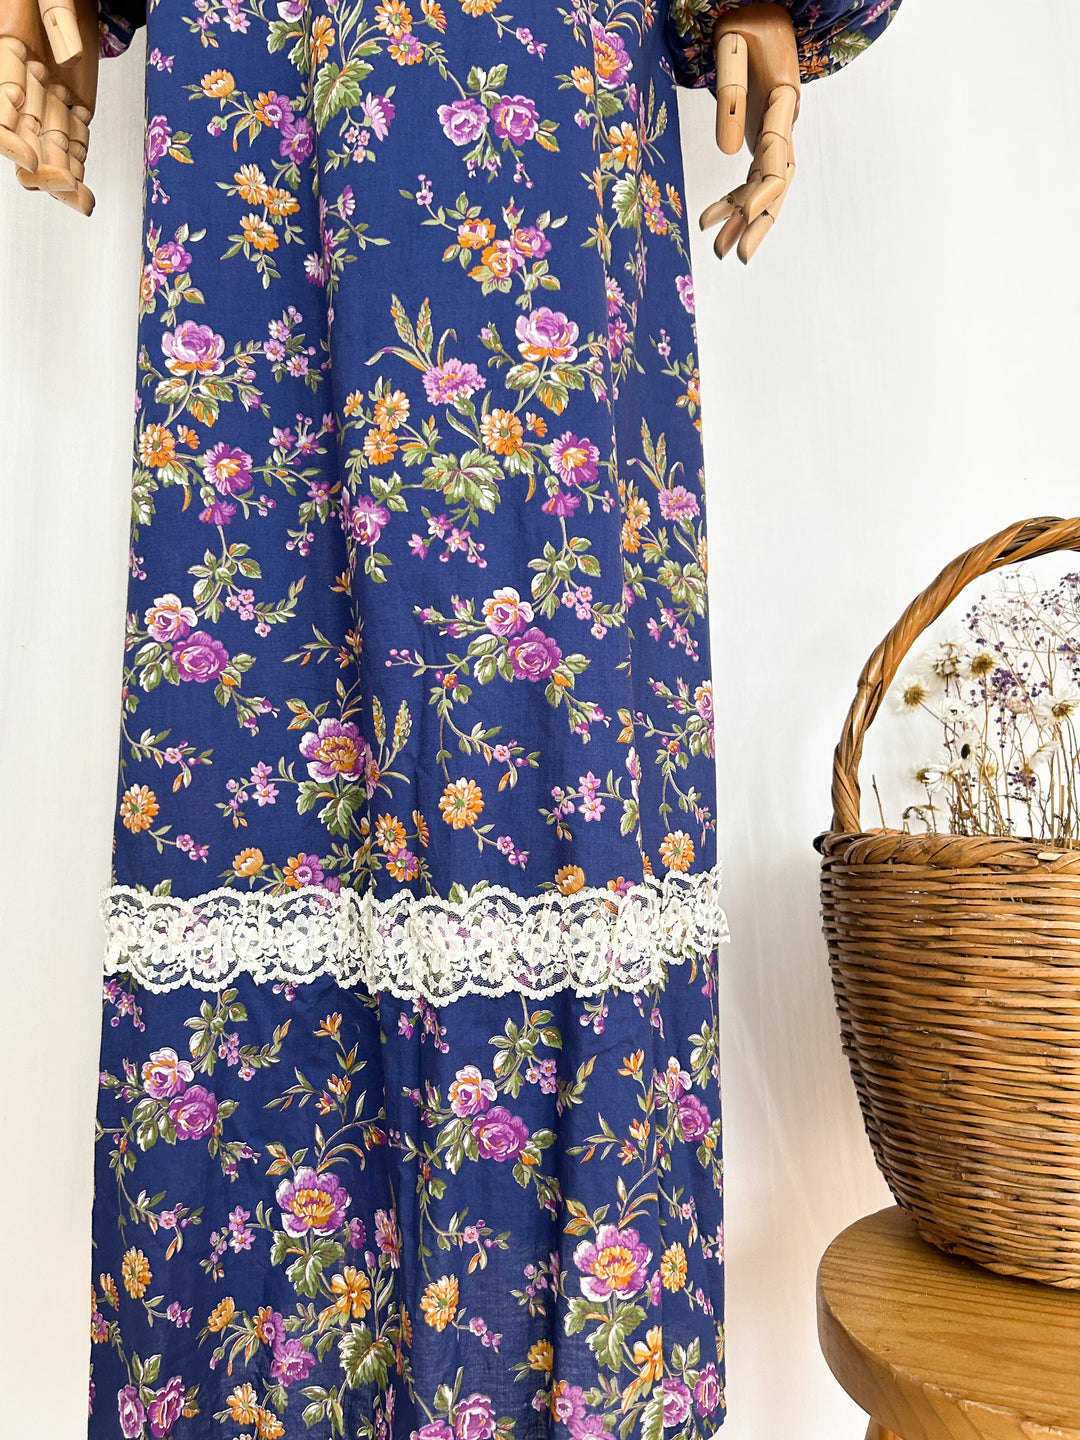 Larkspur ~ Beautiful Romantic Floral Cotton 70s Prairie Dress